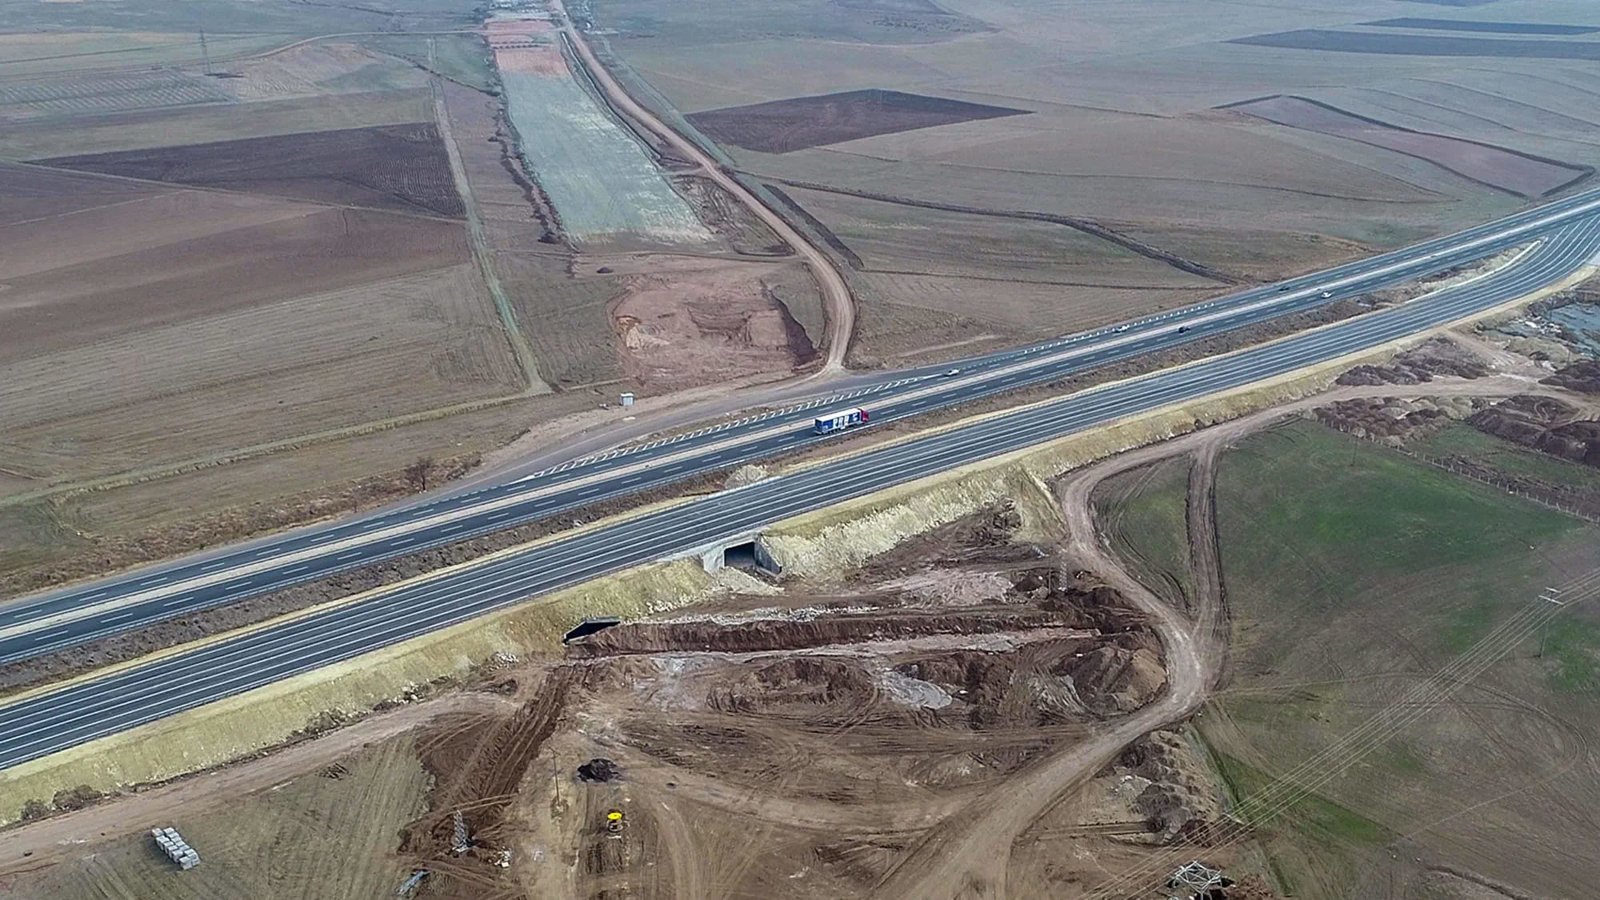 Aerial view of the Ankara to Nigde motorway